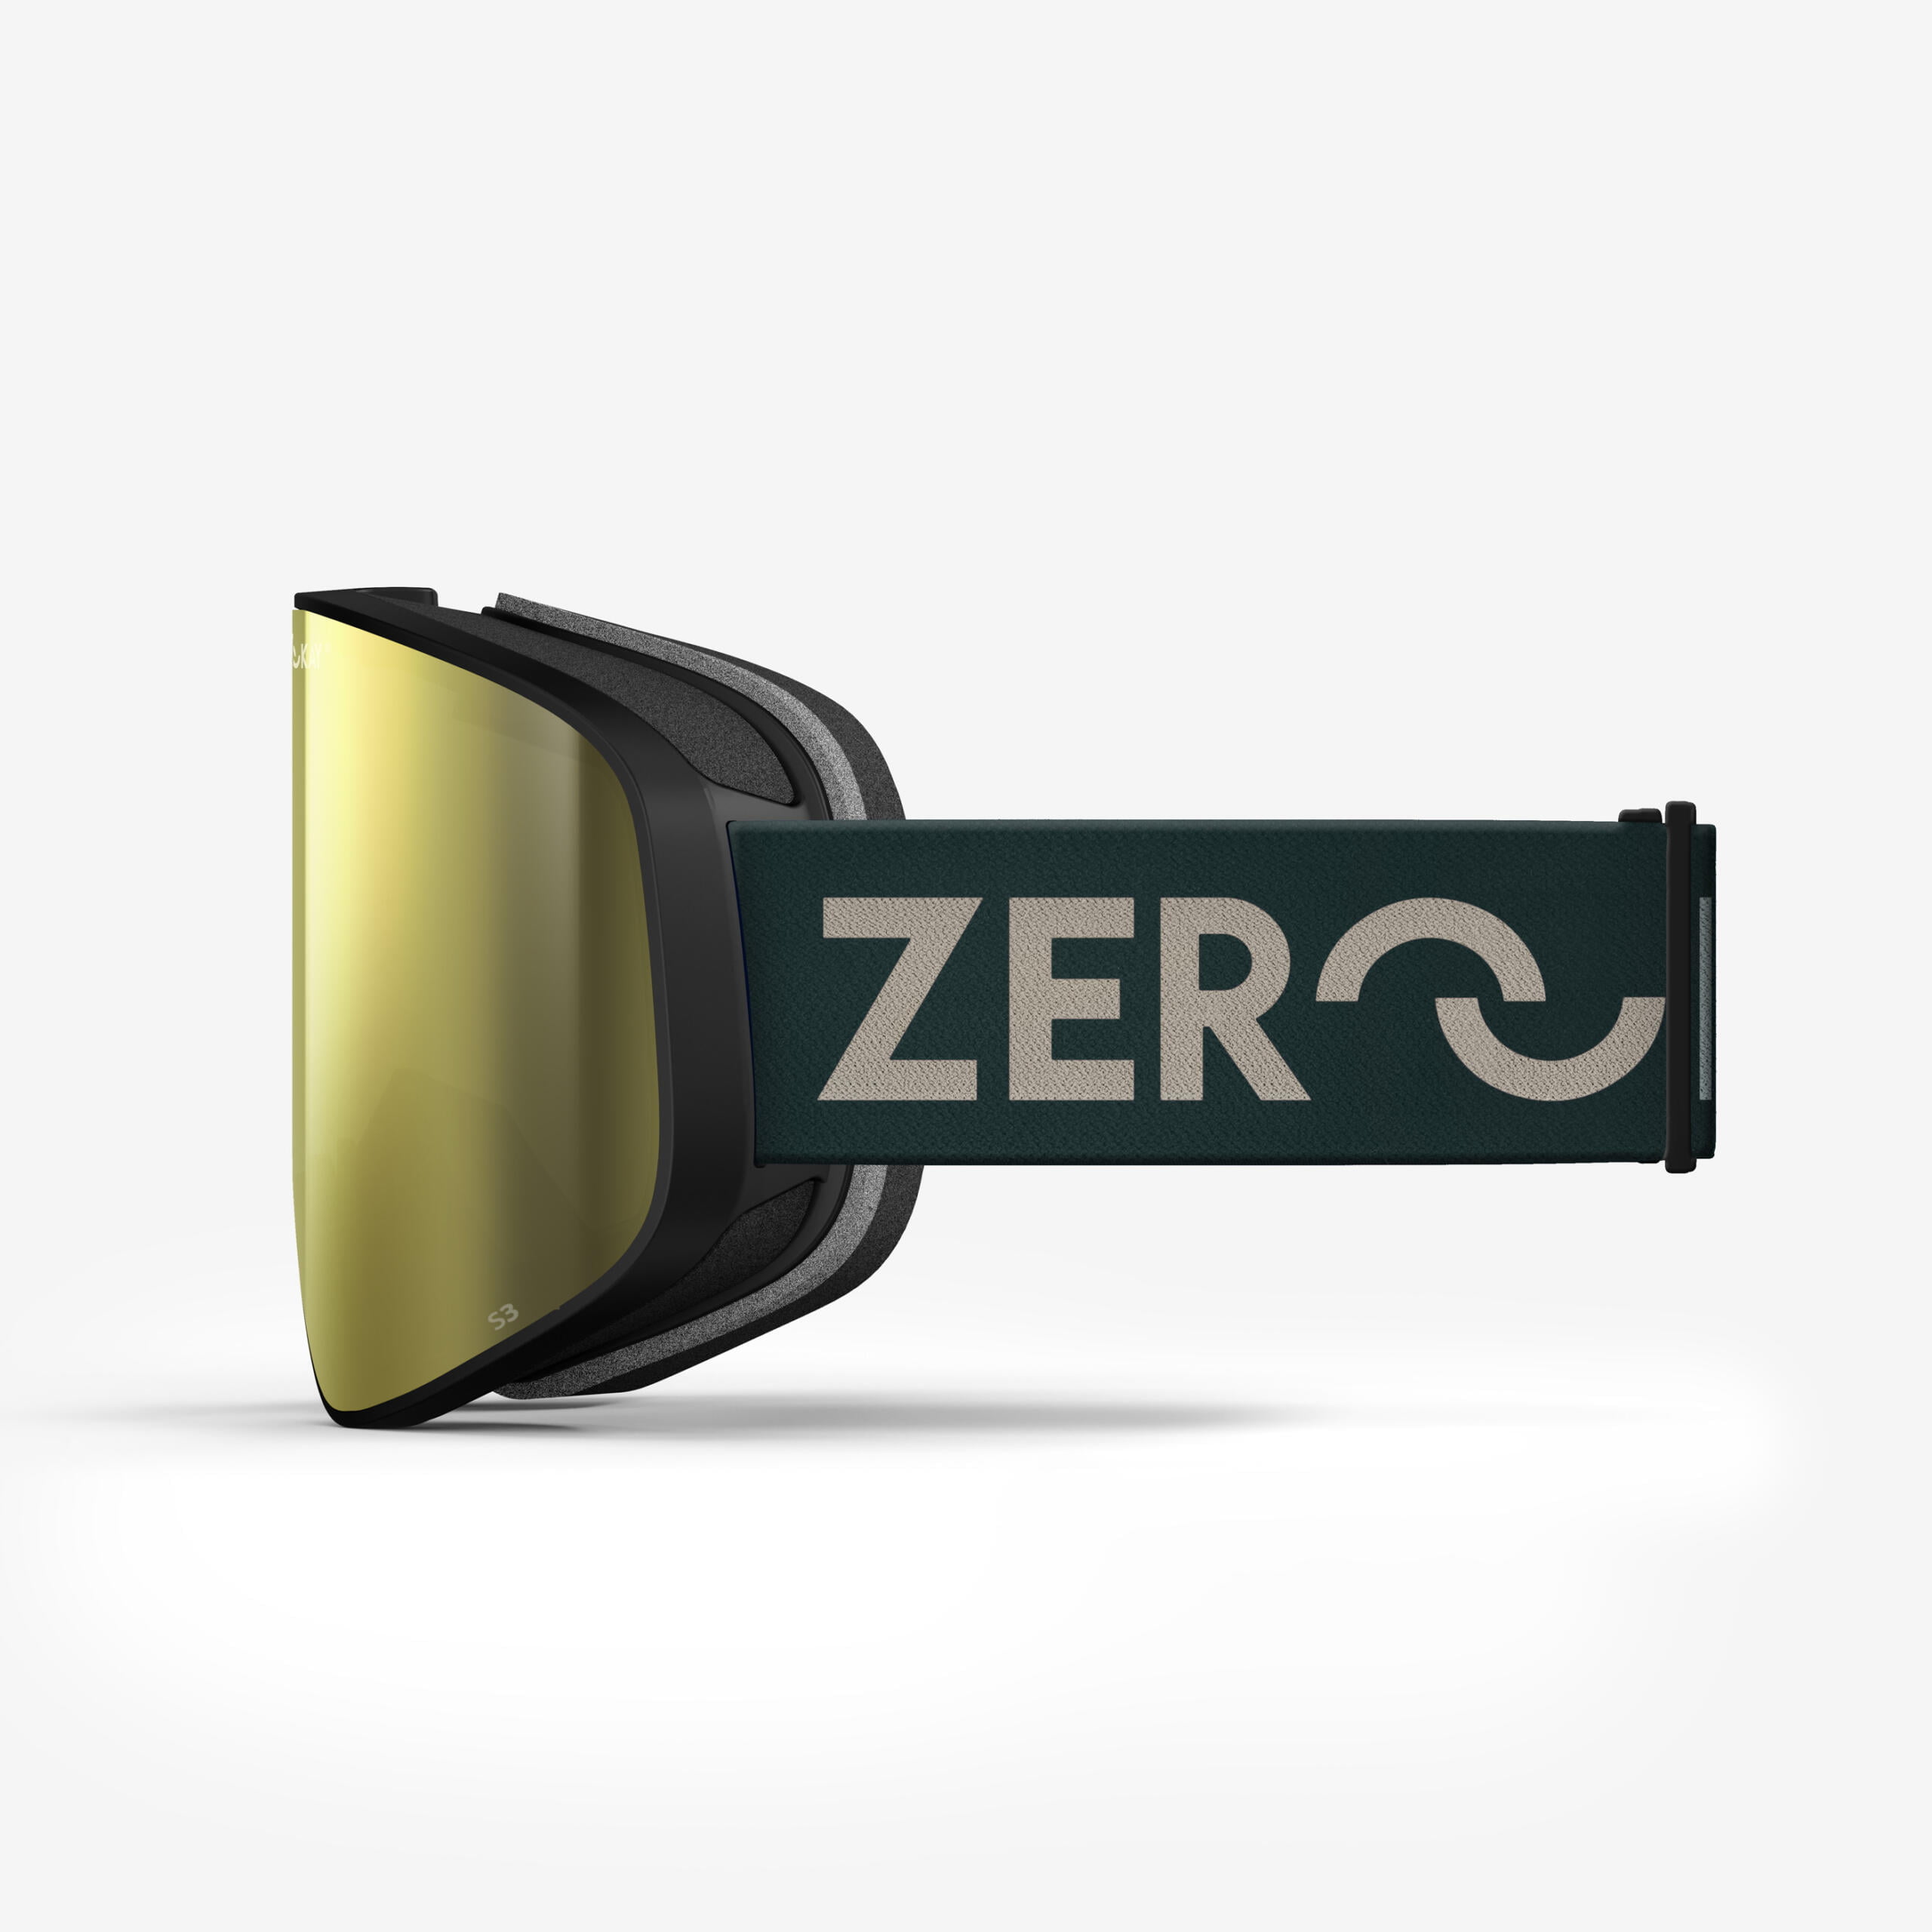 Masque de ski Zerokay Contrast avec un verre miroir or et élastique vert, vantant l'artisanat italien, certifié avec traitement anti-buée et antibactérien pour des performances exceptionnelles.